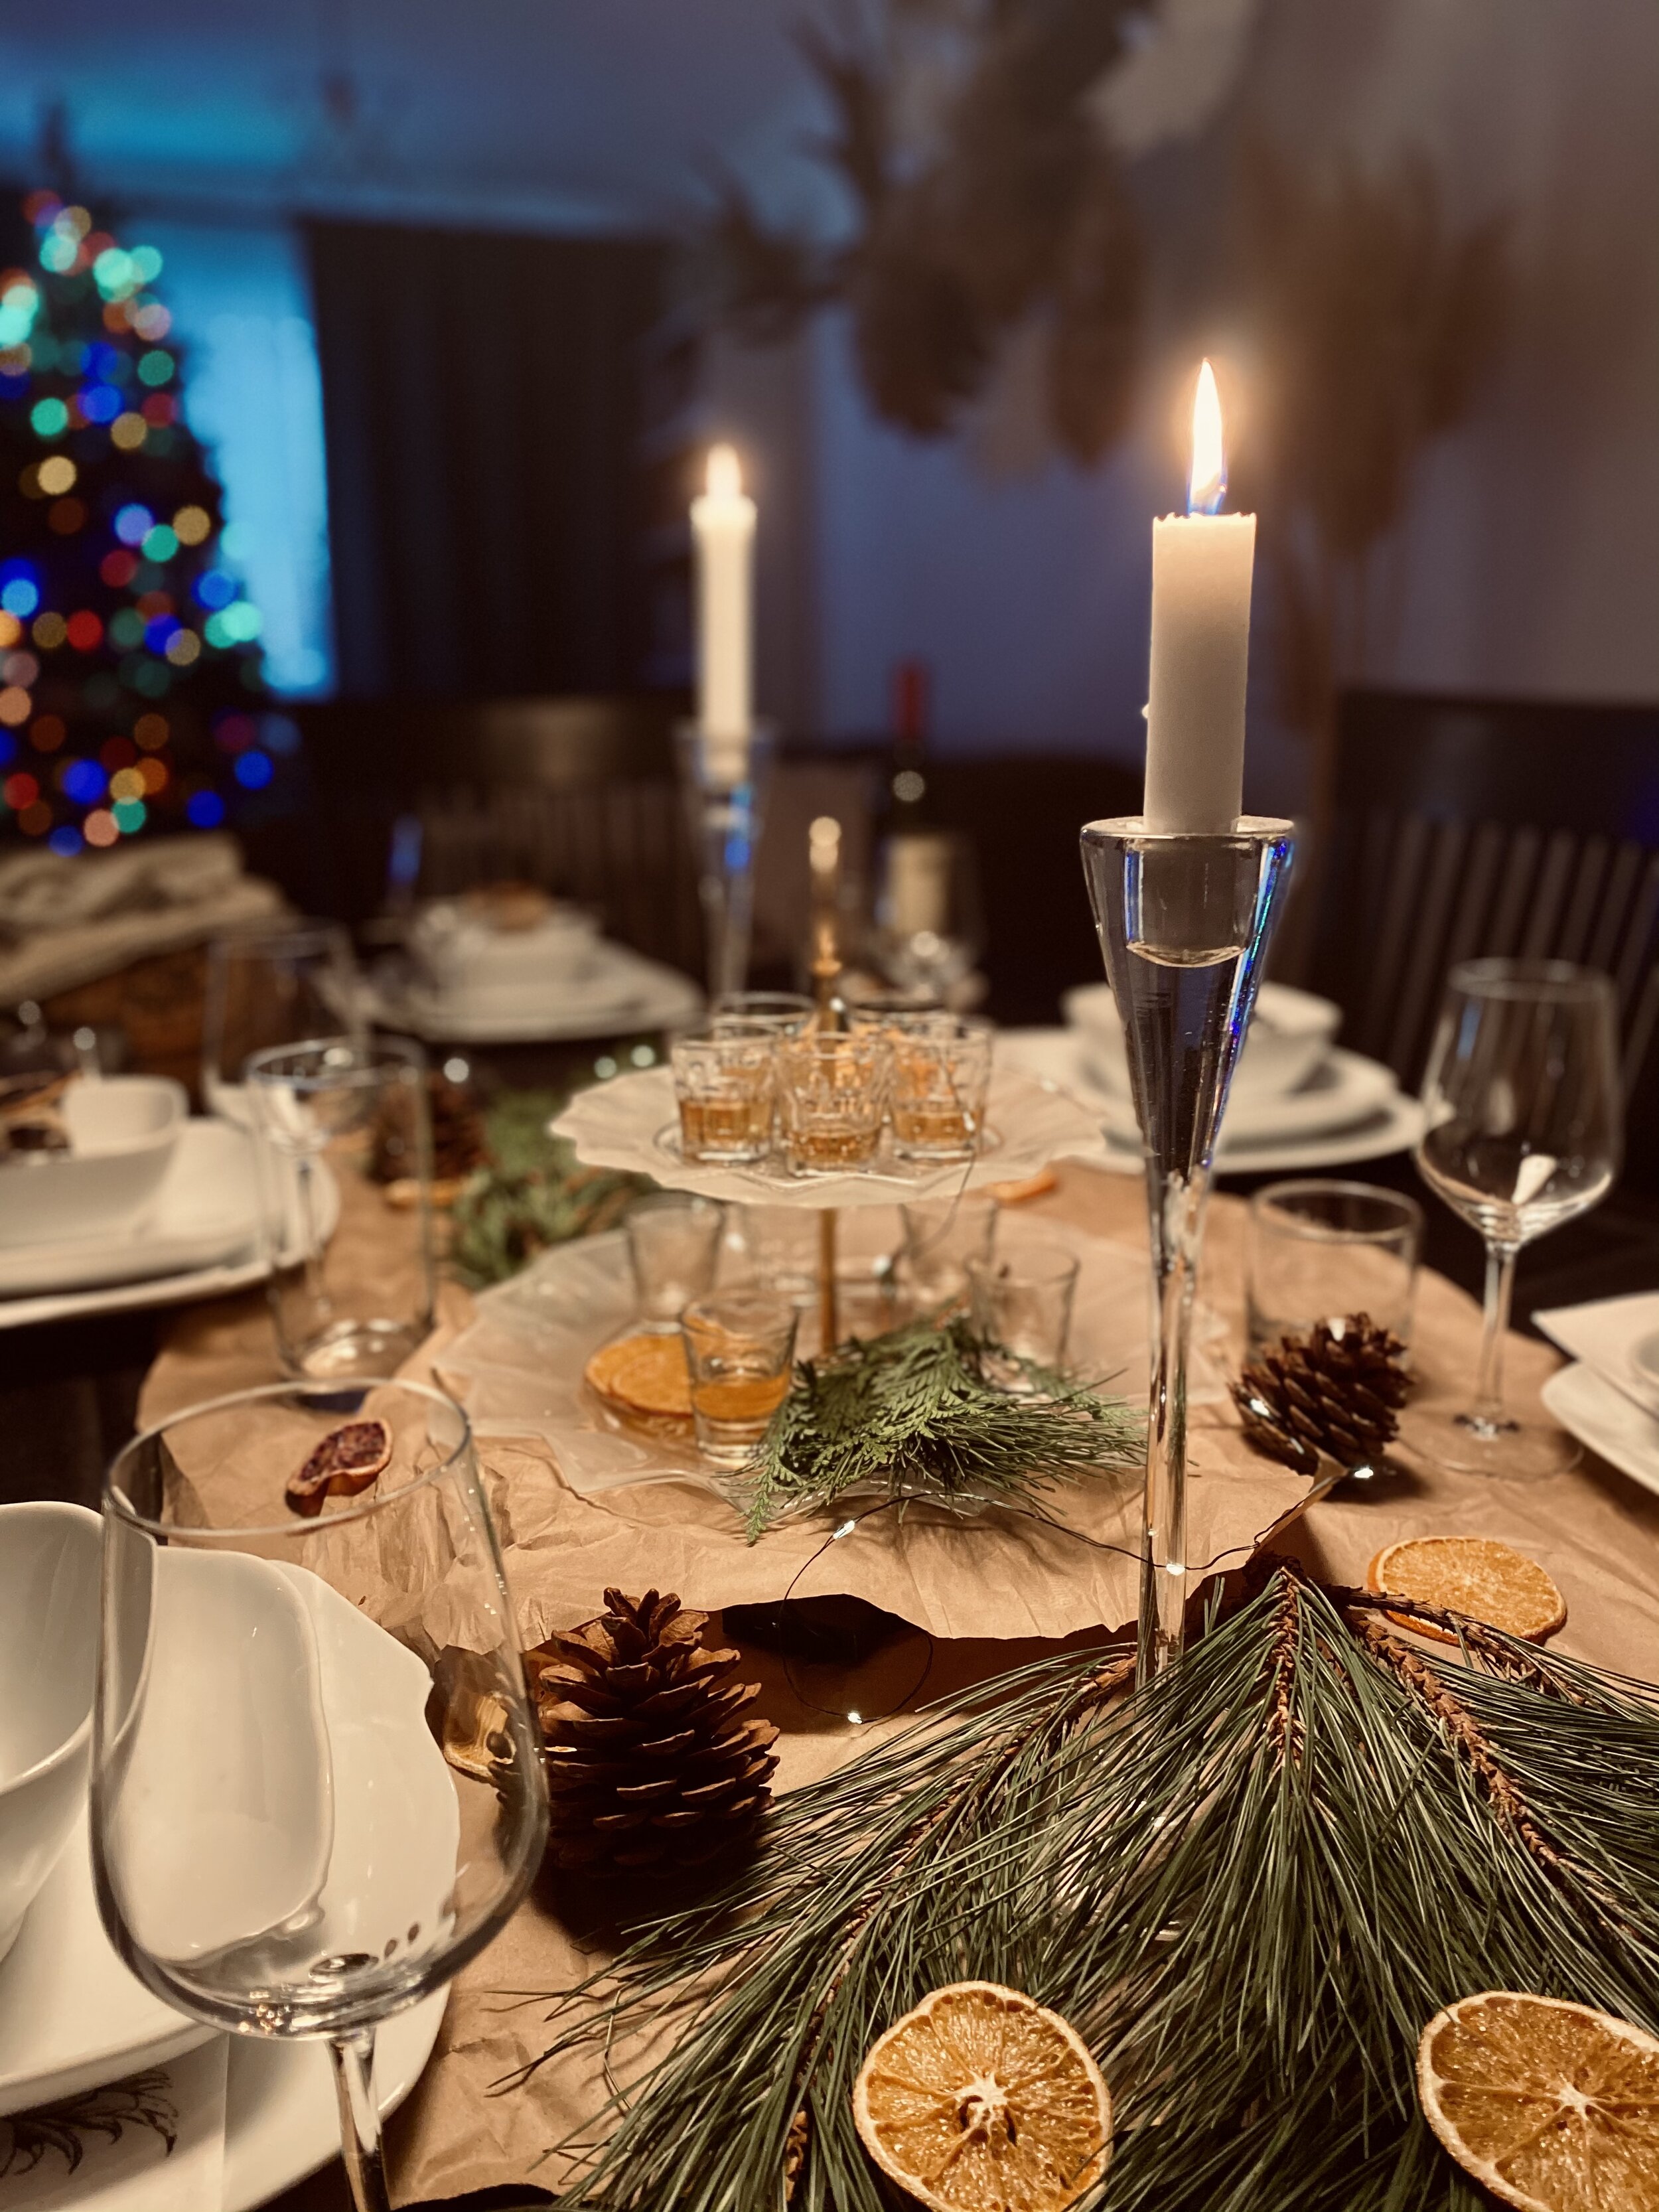 Comment créer un centre de table pour votre table de Noël ?